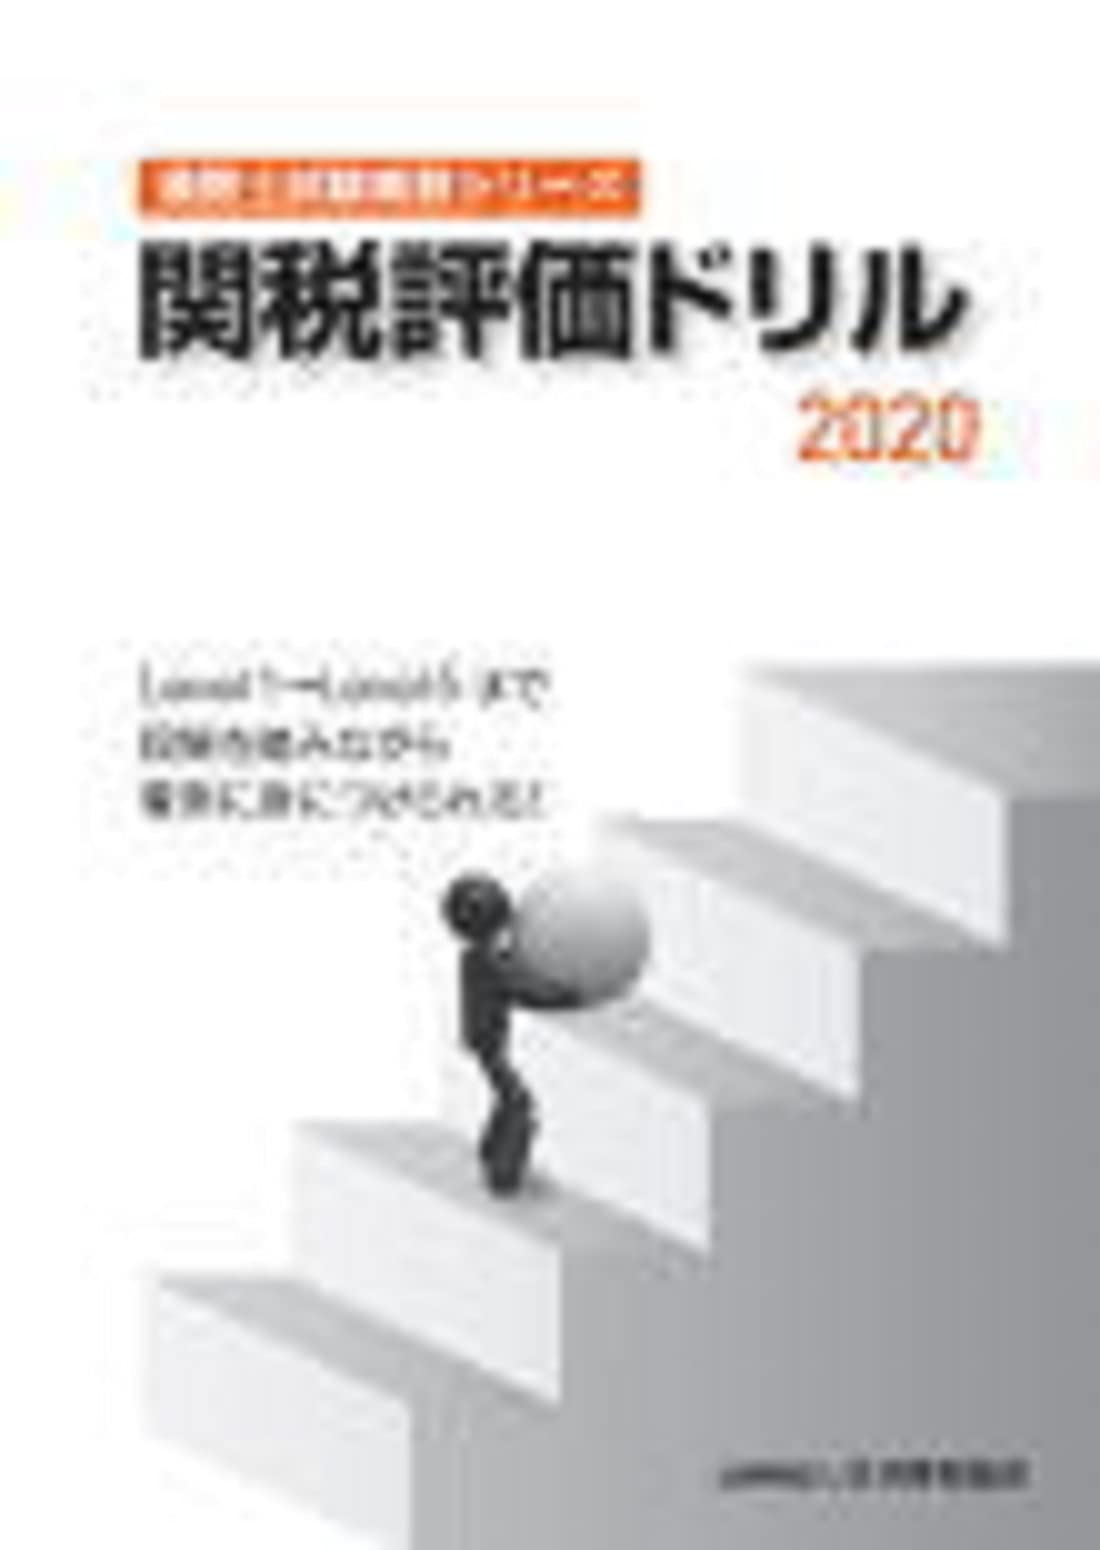 通関士試験補習シリーズ関税評価ドリル2020(中古品)